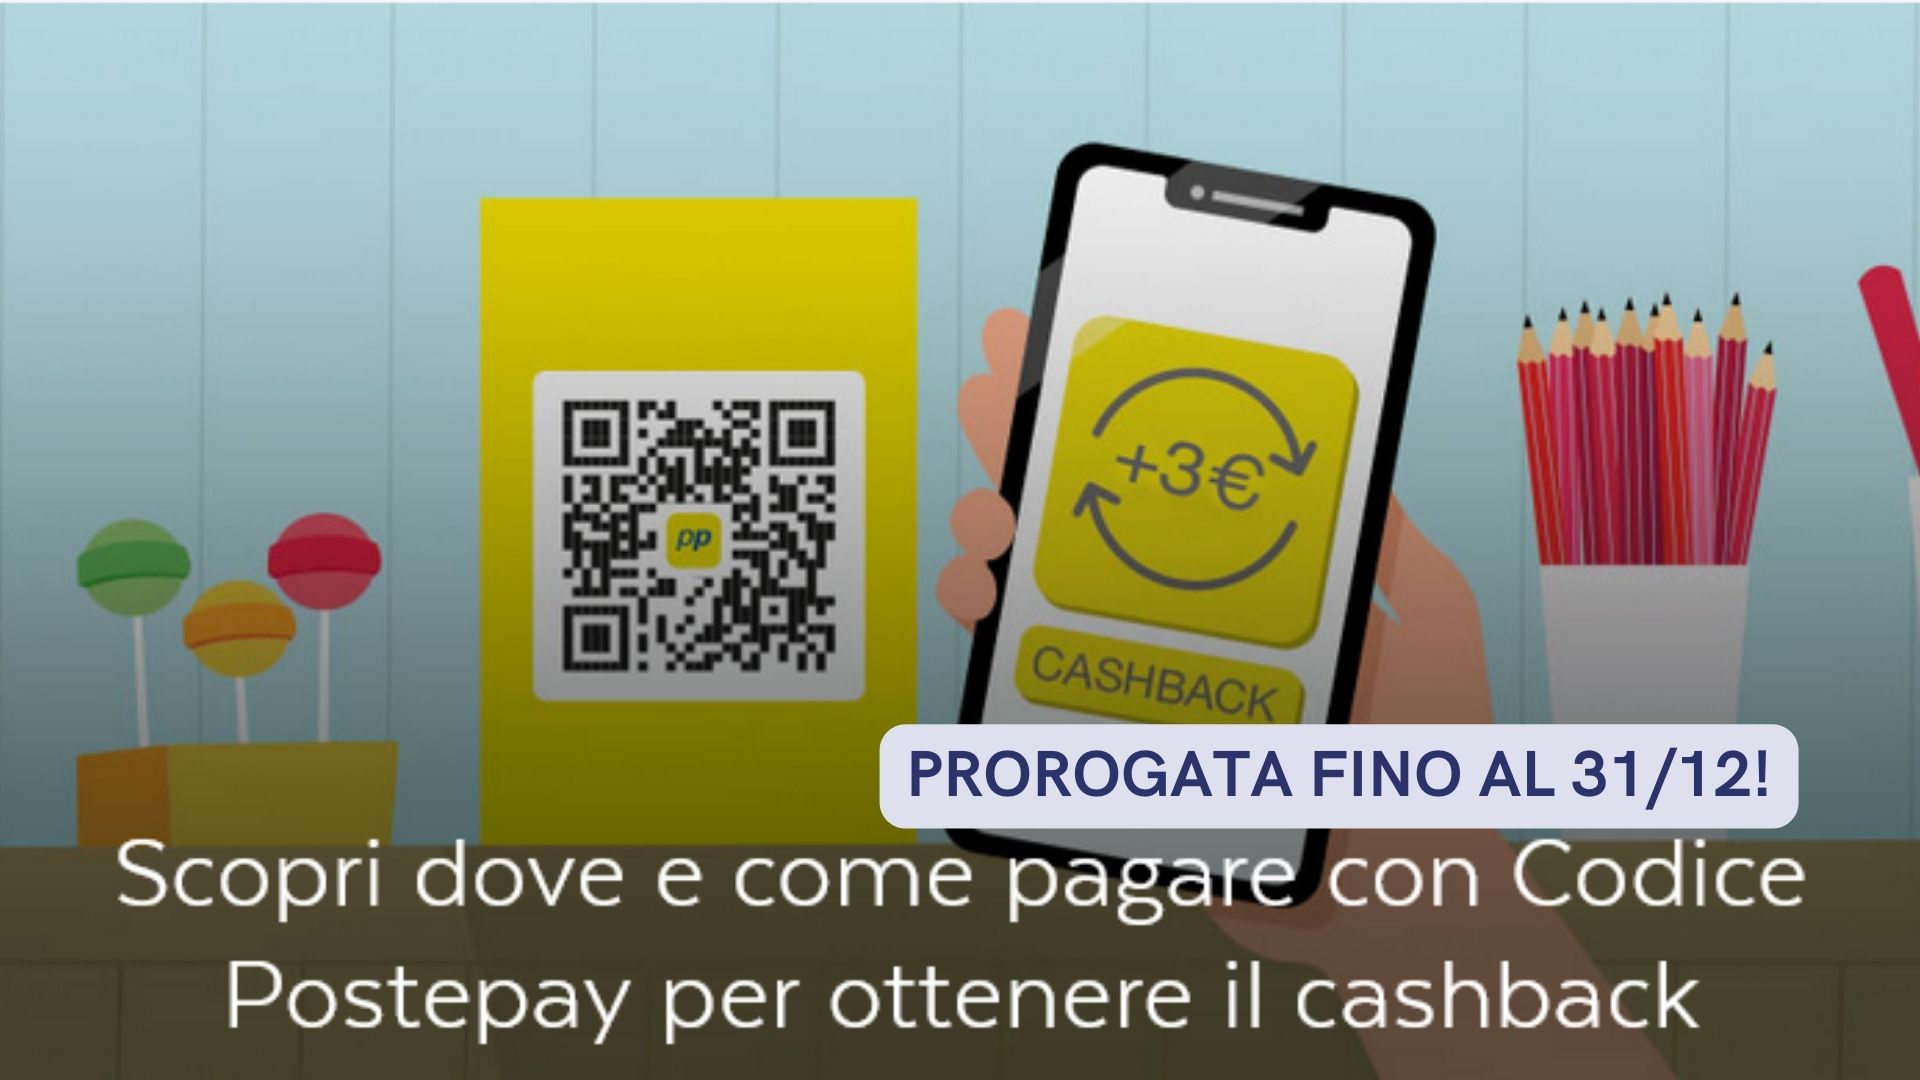 Postepay: 10 euro di cashback al giorno (iniziativa prorogata!)